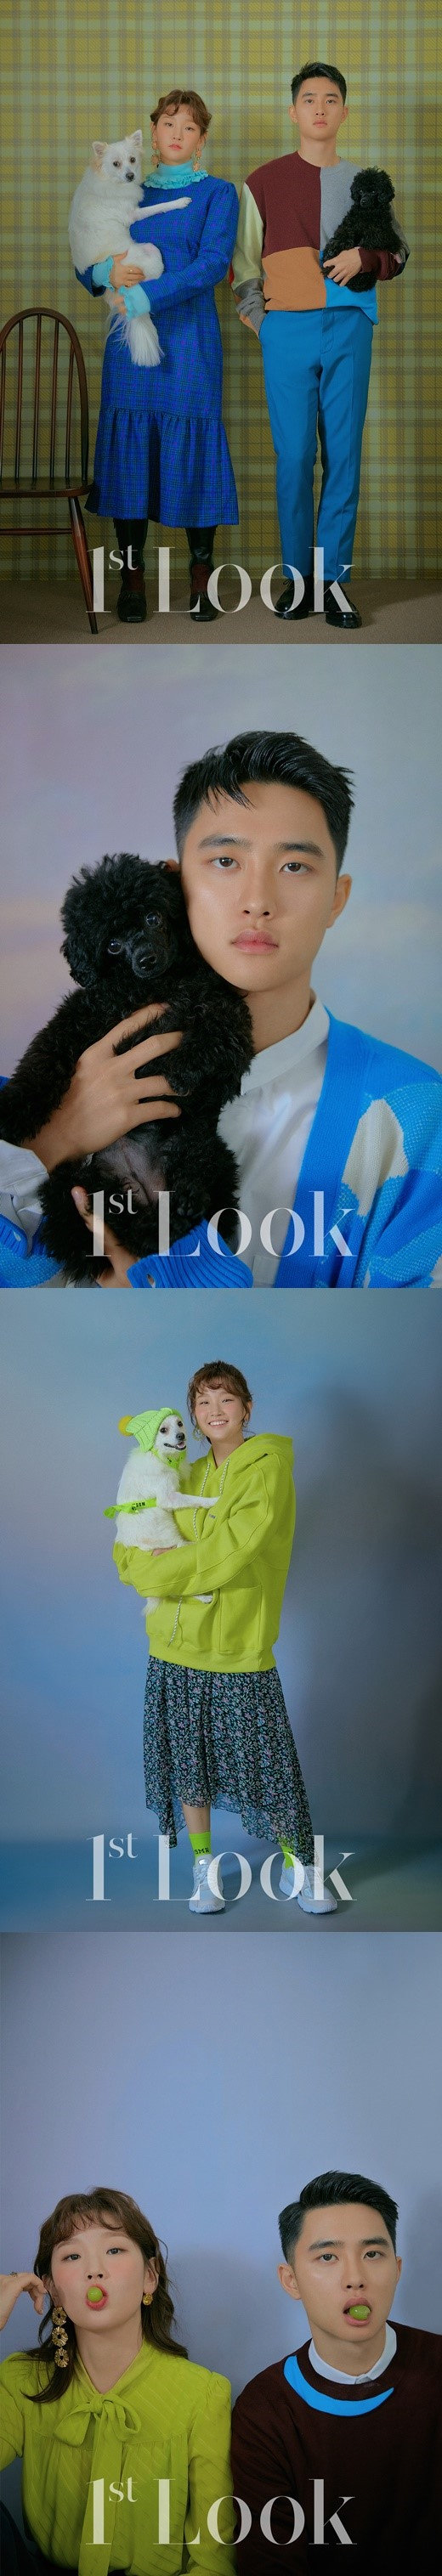 Exo ディオ パク ソダム 愛犬とのグラビアを撮影 カリスマ性 キュートさ溢れる魅力をアピール Kstyle